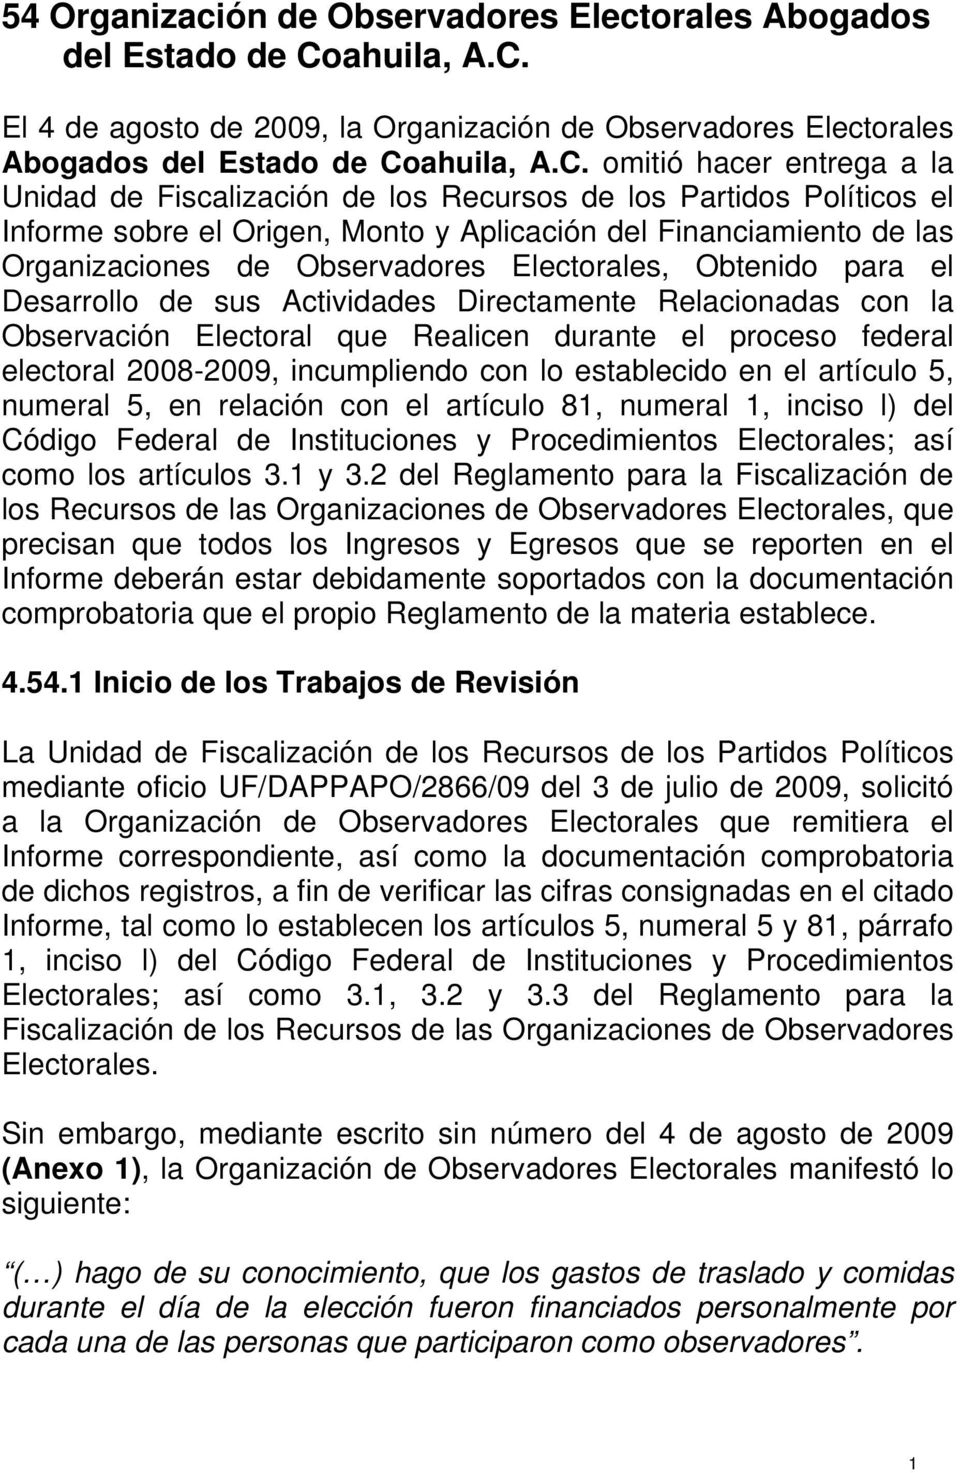 El 4 de agosto de 2009, la Organización de Observadores Electorales Abogados del Estado de Co omitió hacer entrega a la Unidad de Fiscalización de los Recursos de los Partidos Políticos el Informe